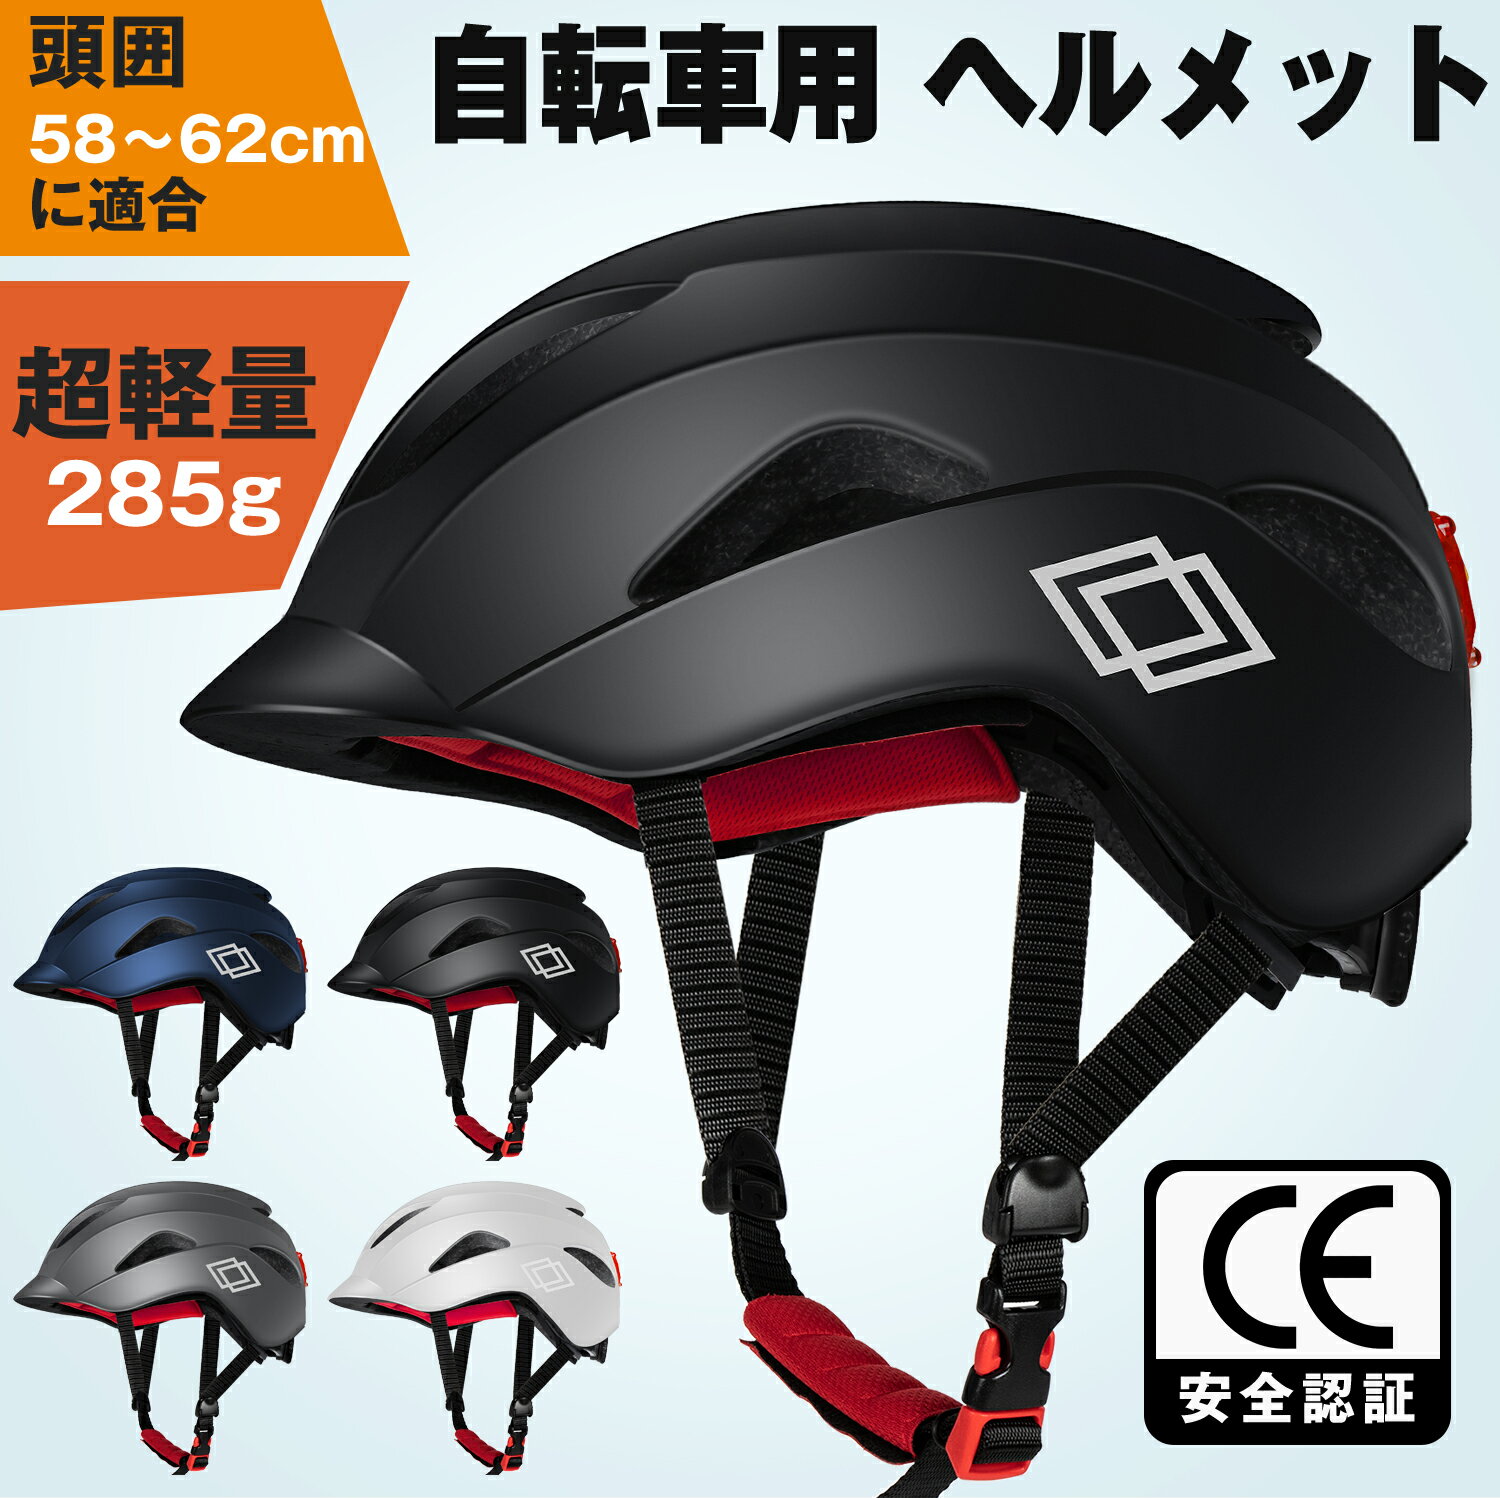 おしゃれな軽量ヘルメット！シンプルで軽い自転車用ヘルメットのおすすめを教えて！